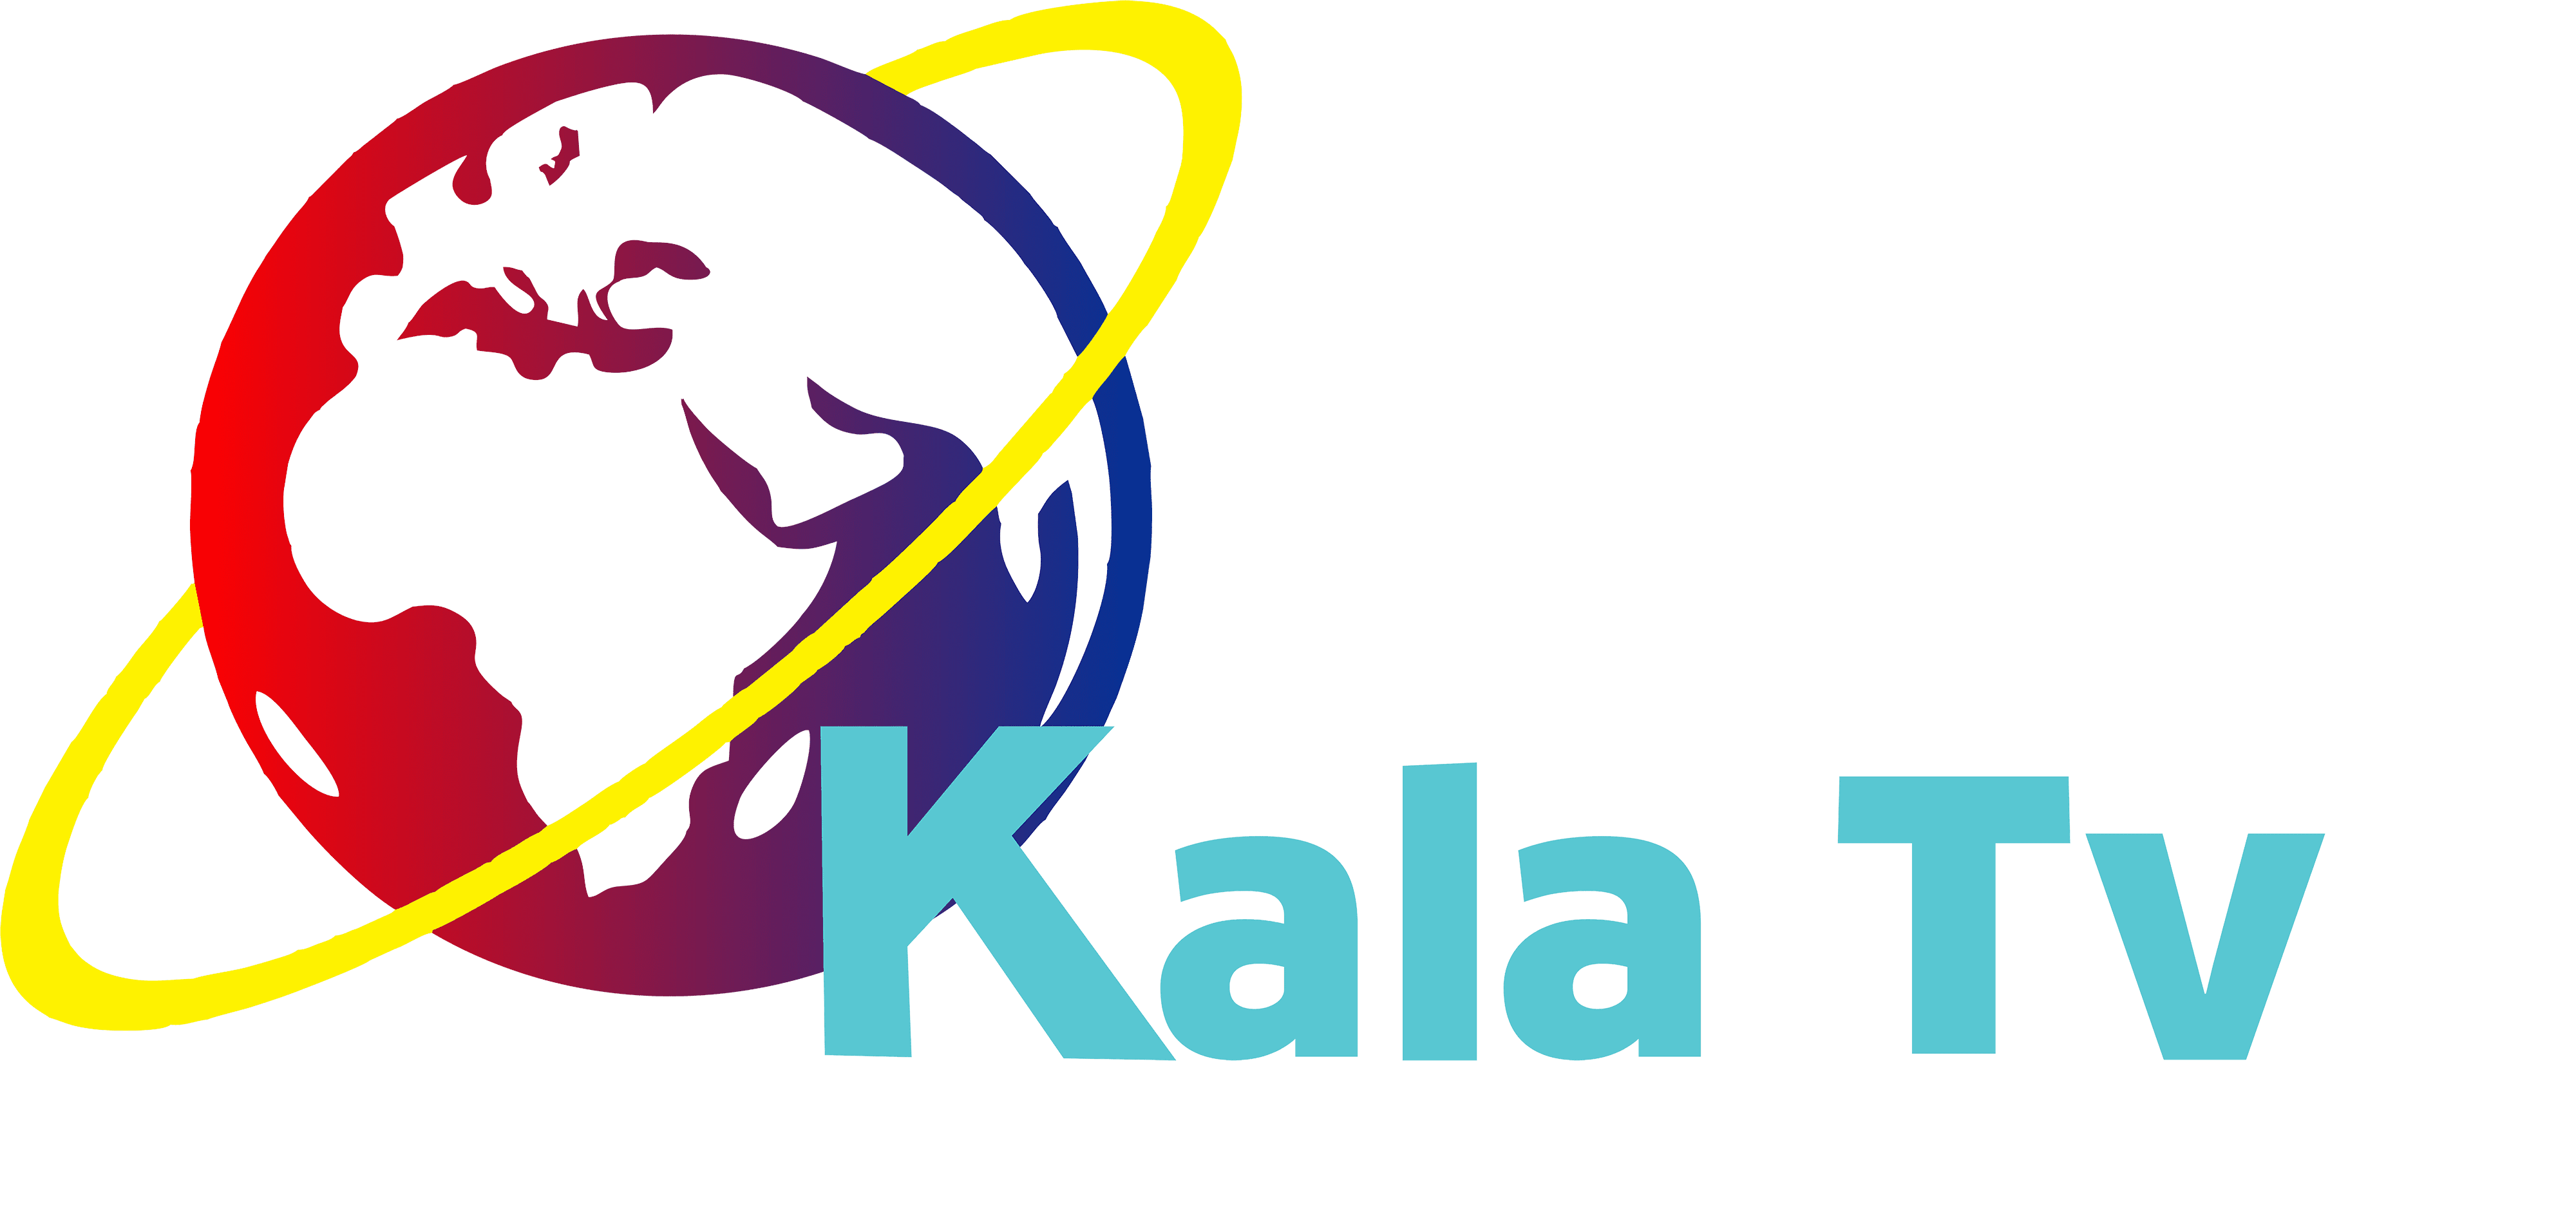 Kala Sangam logo | Kala Sangam | Flickr